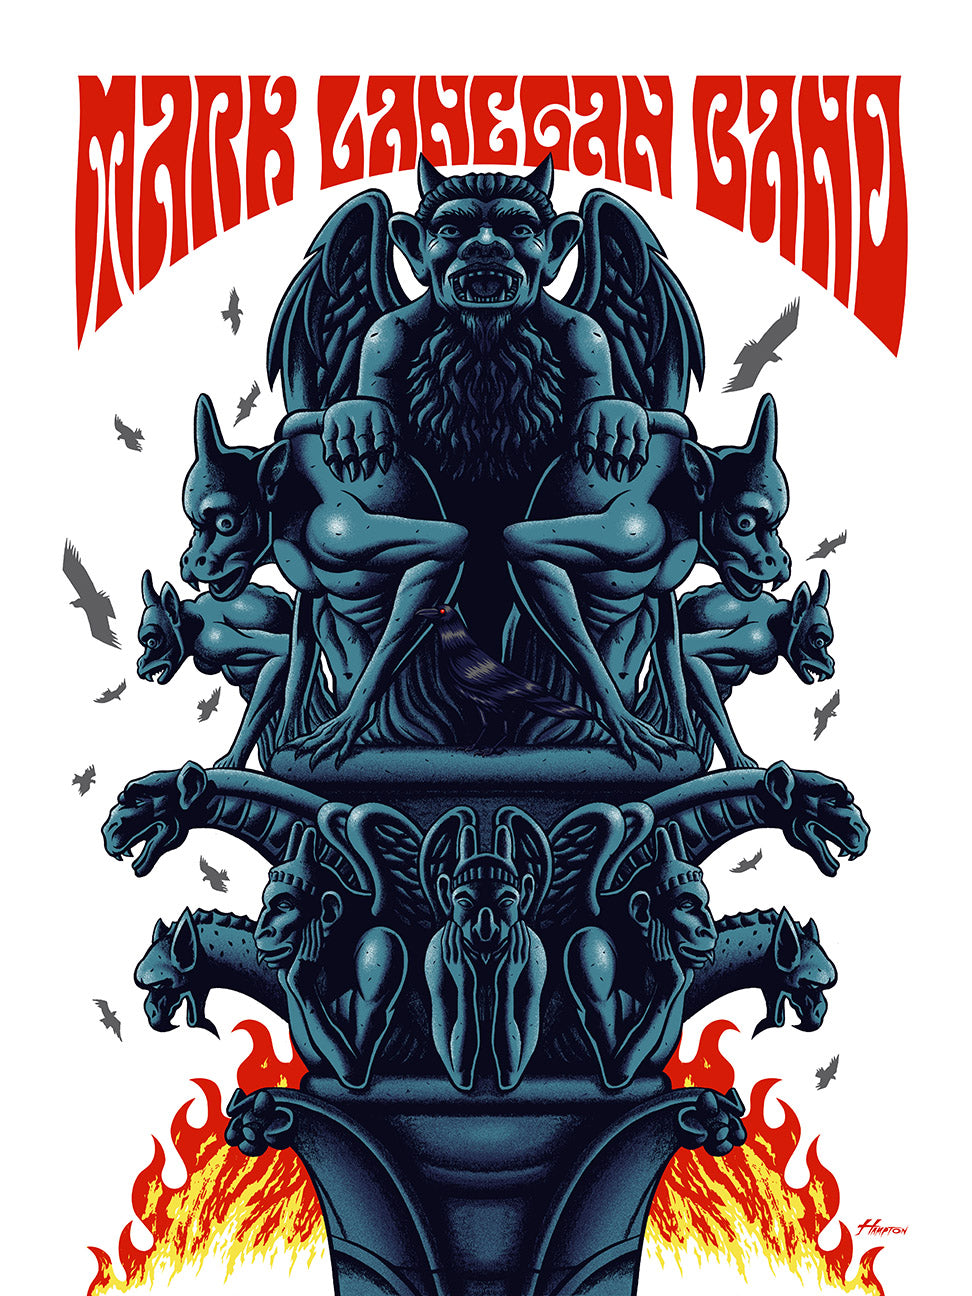 Mark Lanegan Band Gargoyle poster